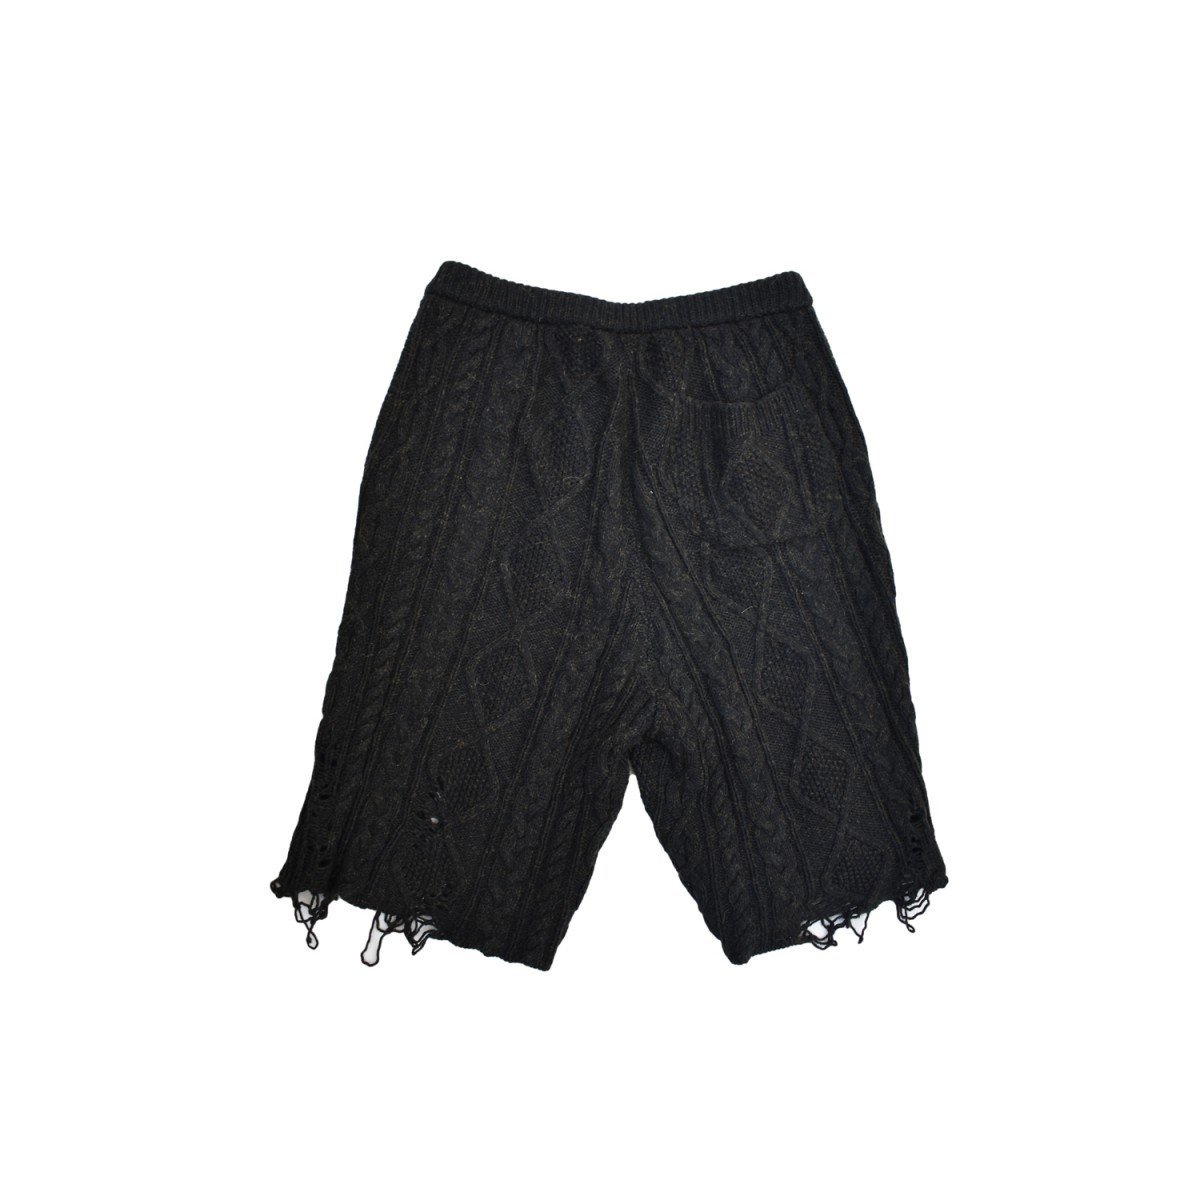 Knit Shorts - 2